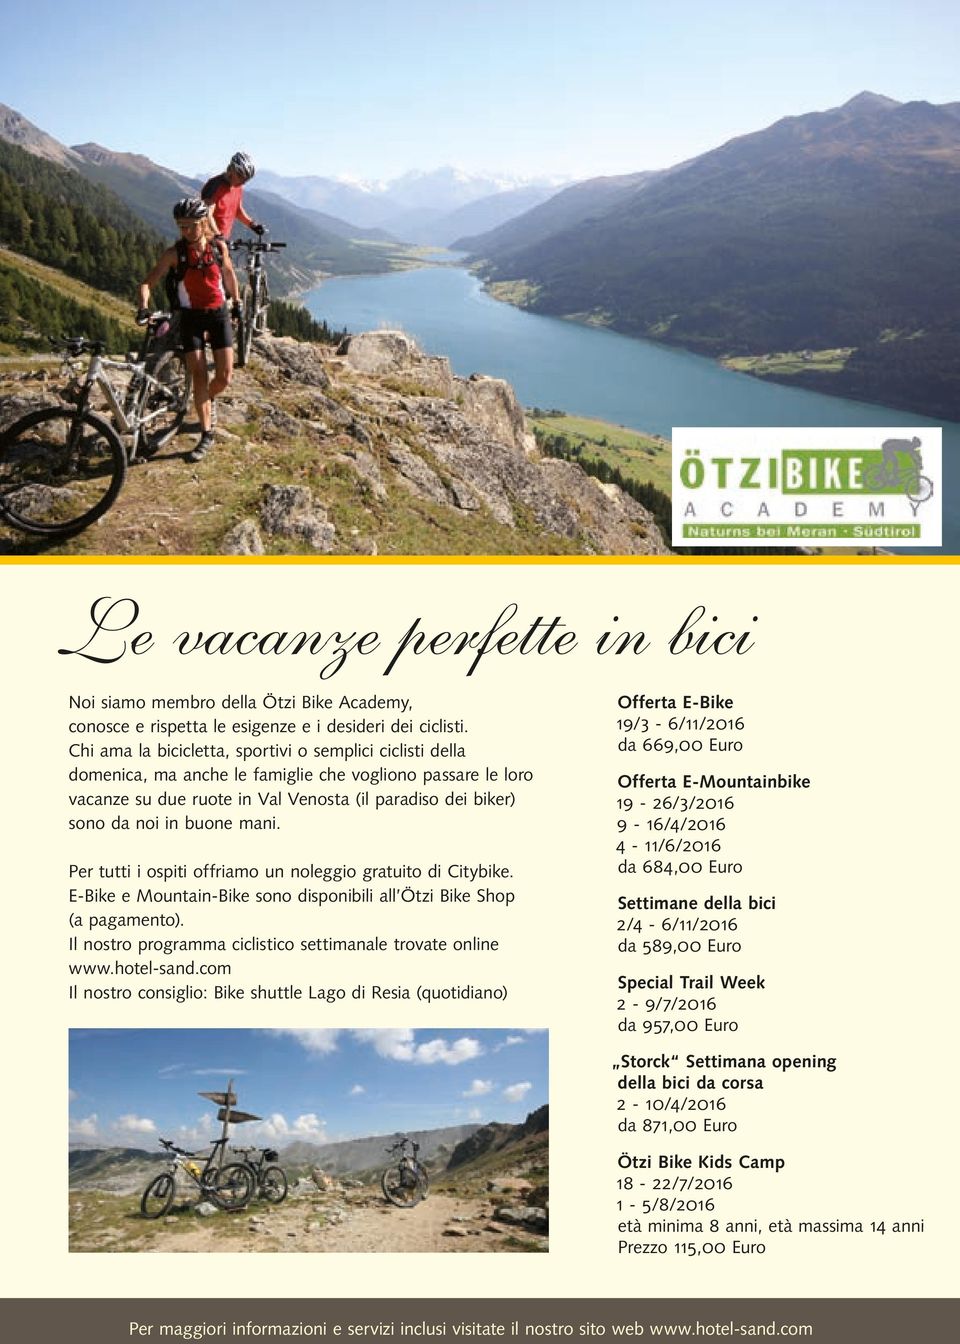 mani. Per tutti i ospiti offriamo un noleggio gratuito di Citybike. E-Bike e Mountain-Bike sono disponibili all Ötzi Bike Shop (a pagamento).